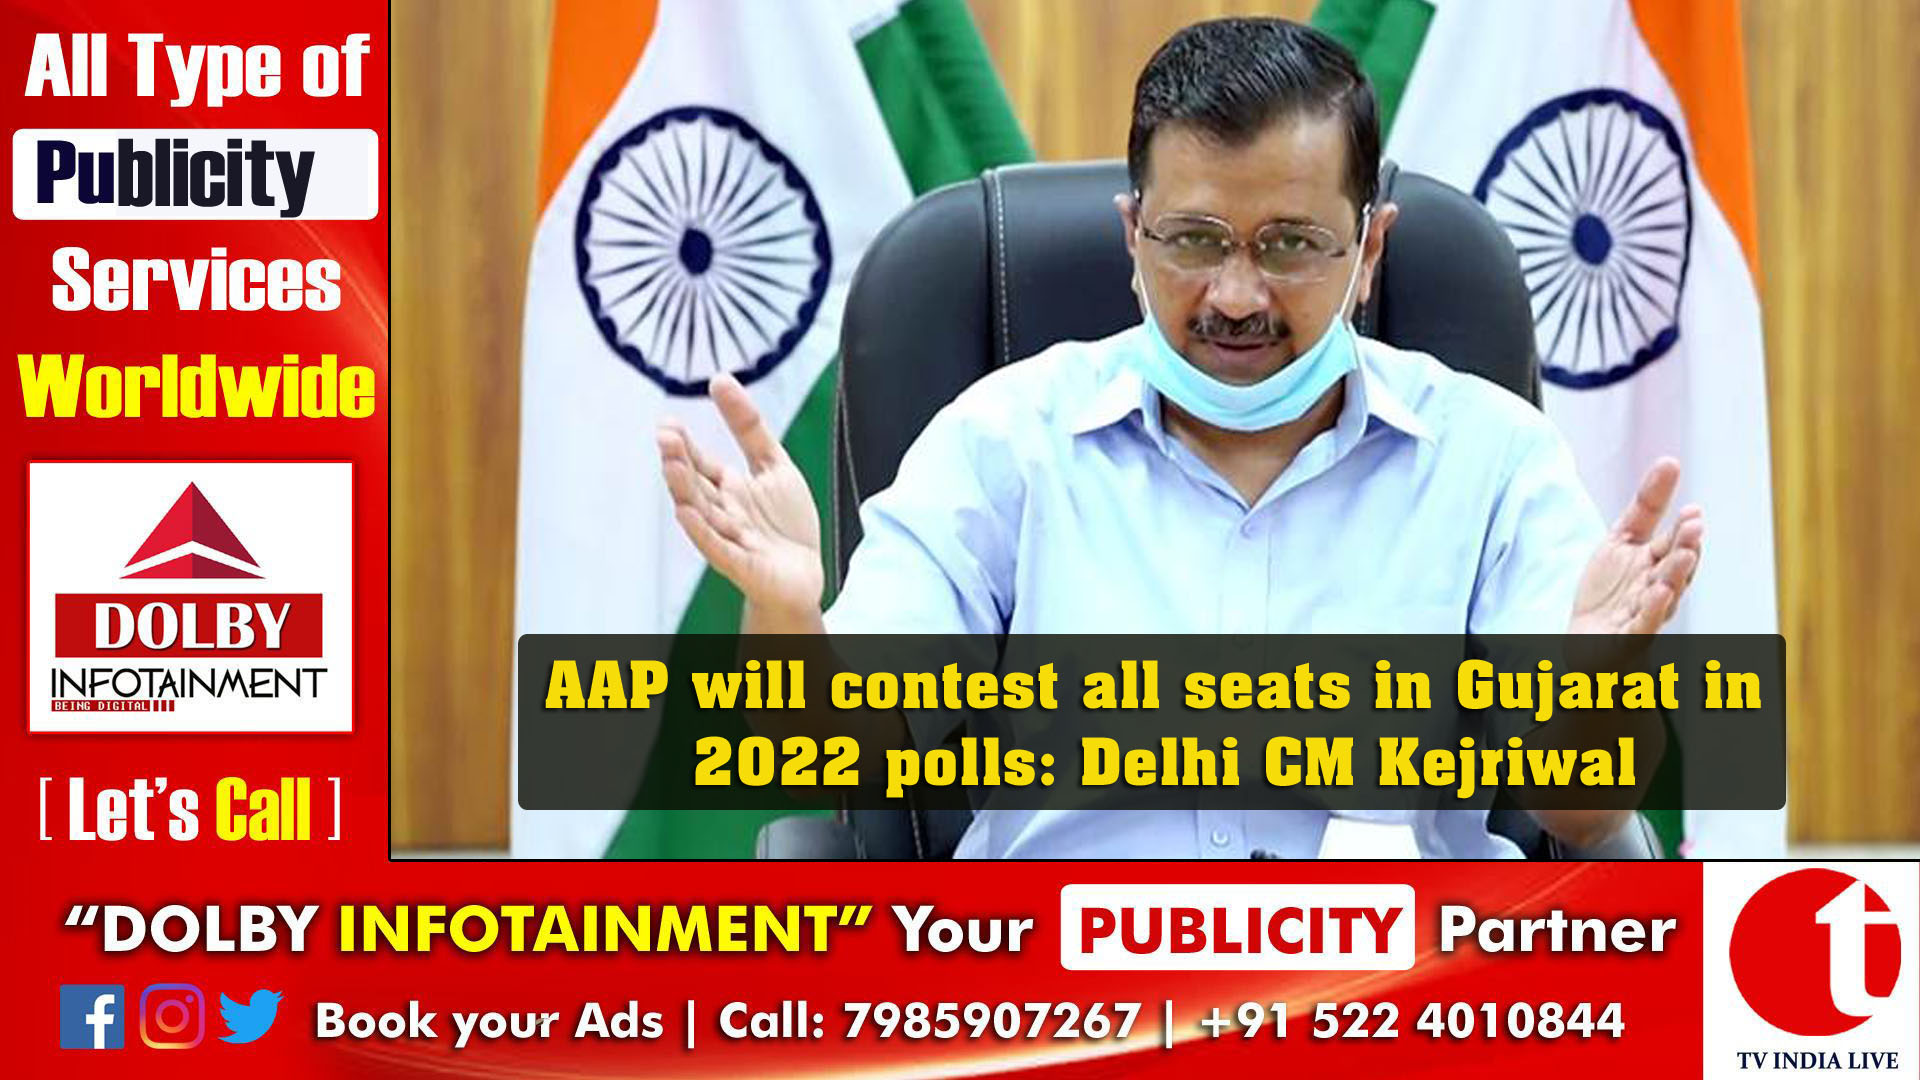 AAP will contest all seats in Gujarat in 2022 polls: Delhi CM Kejriwal